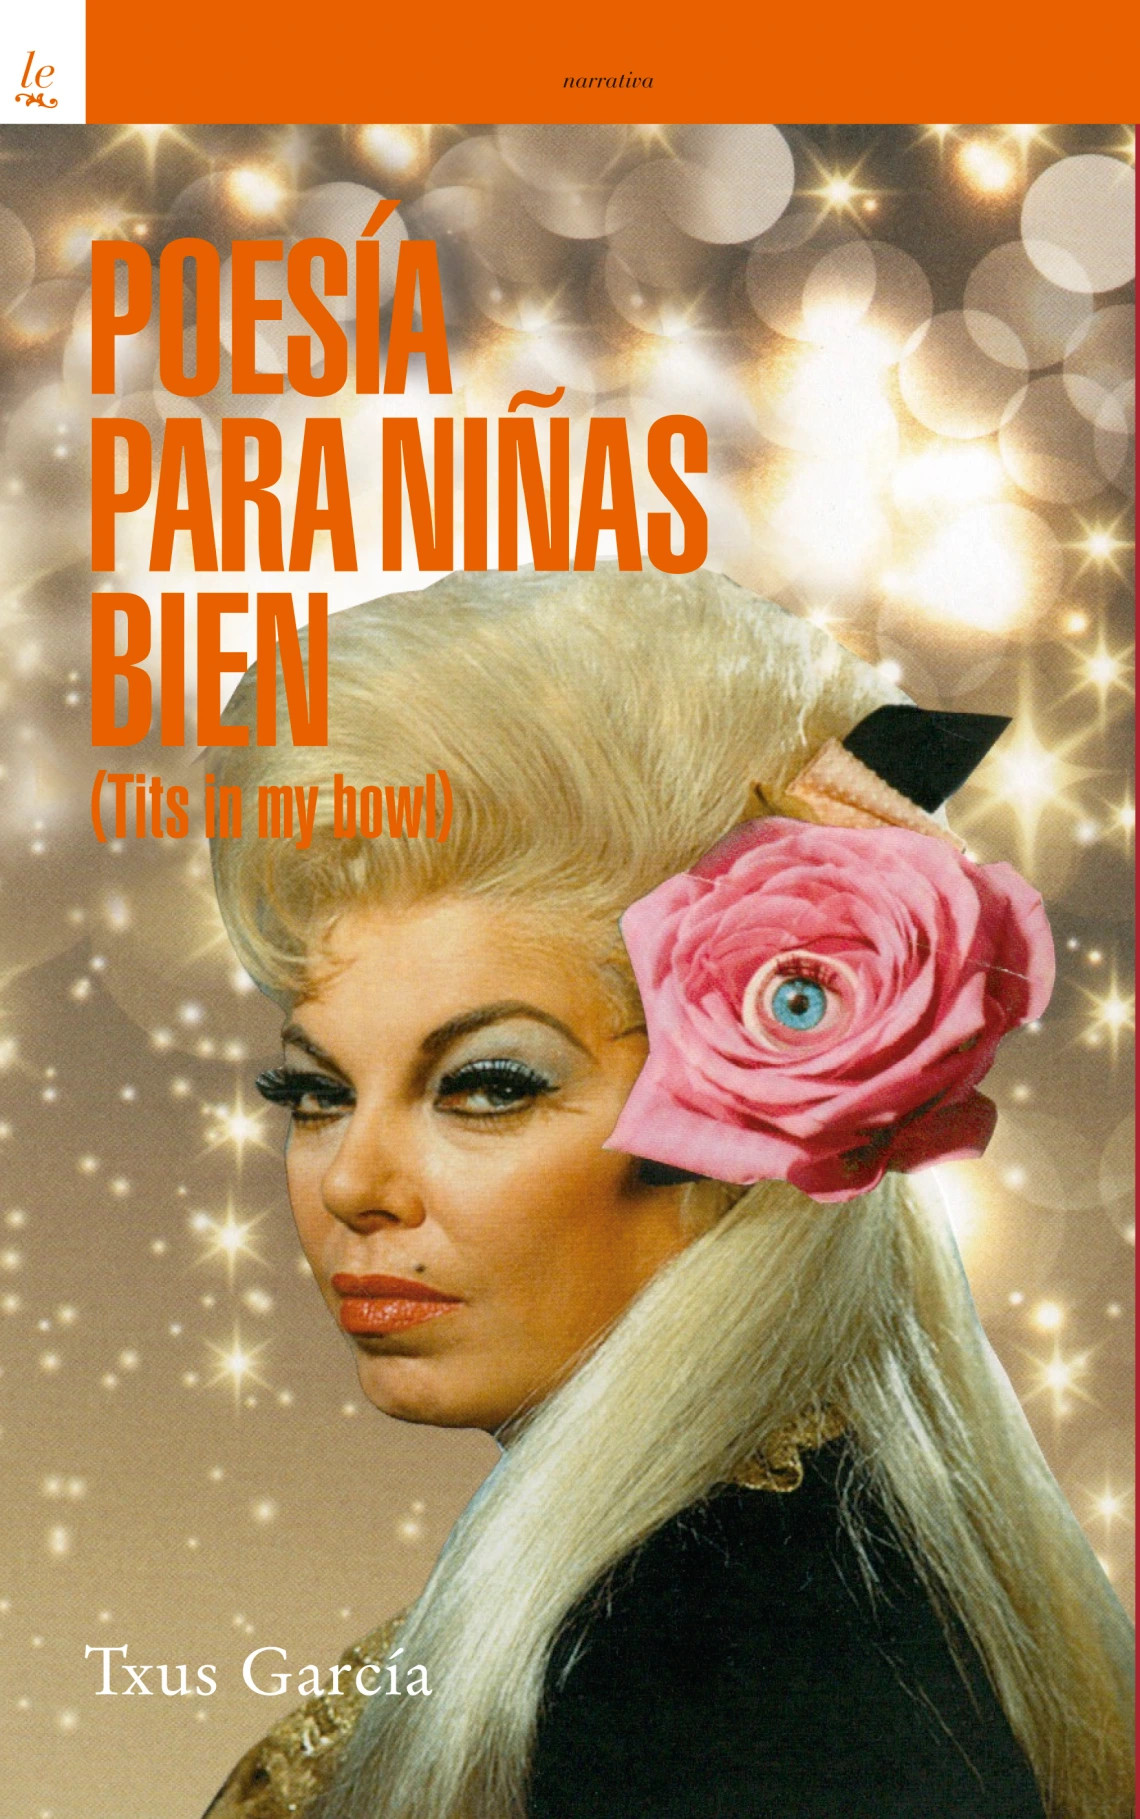 Cubierta del libro Poesía para niñas bien, con retrato de mujer con rosa en el cabello.